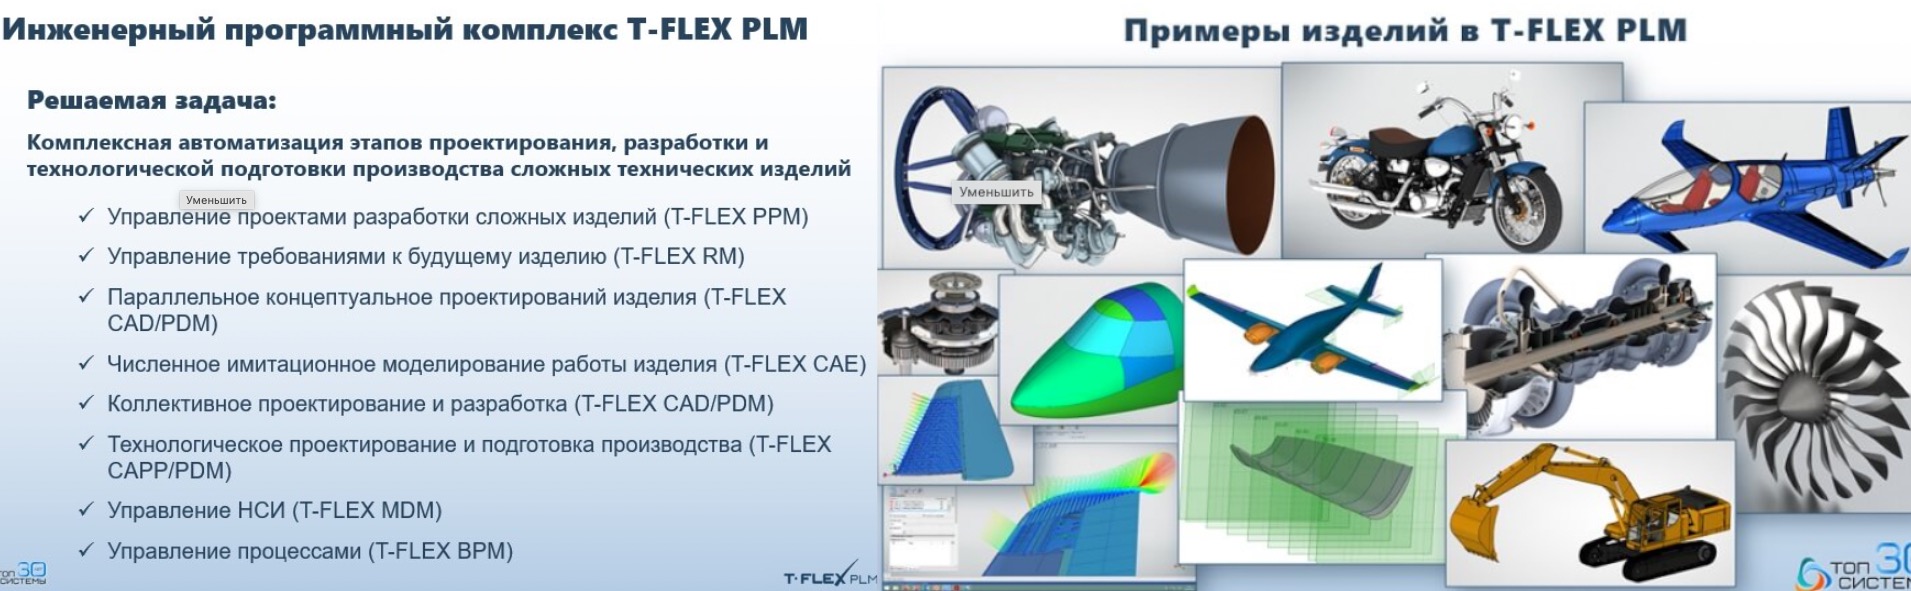 T-FLEX PLM 2022